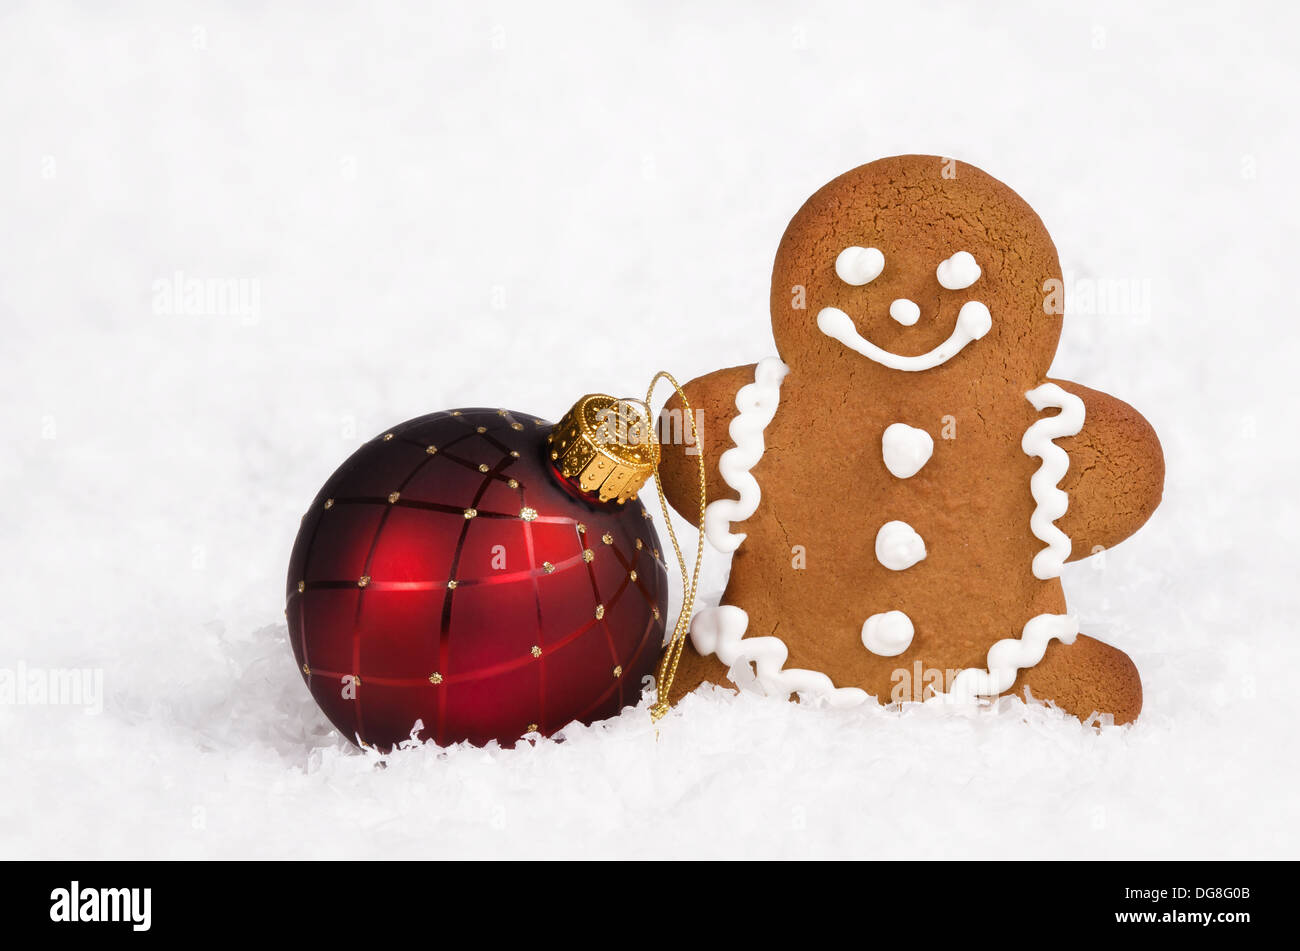 Gingerbread Man cookie et boule de noël ornement rouge sur fond de neige Banque D'Images